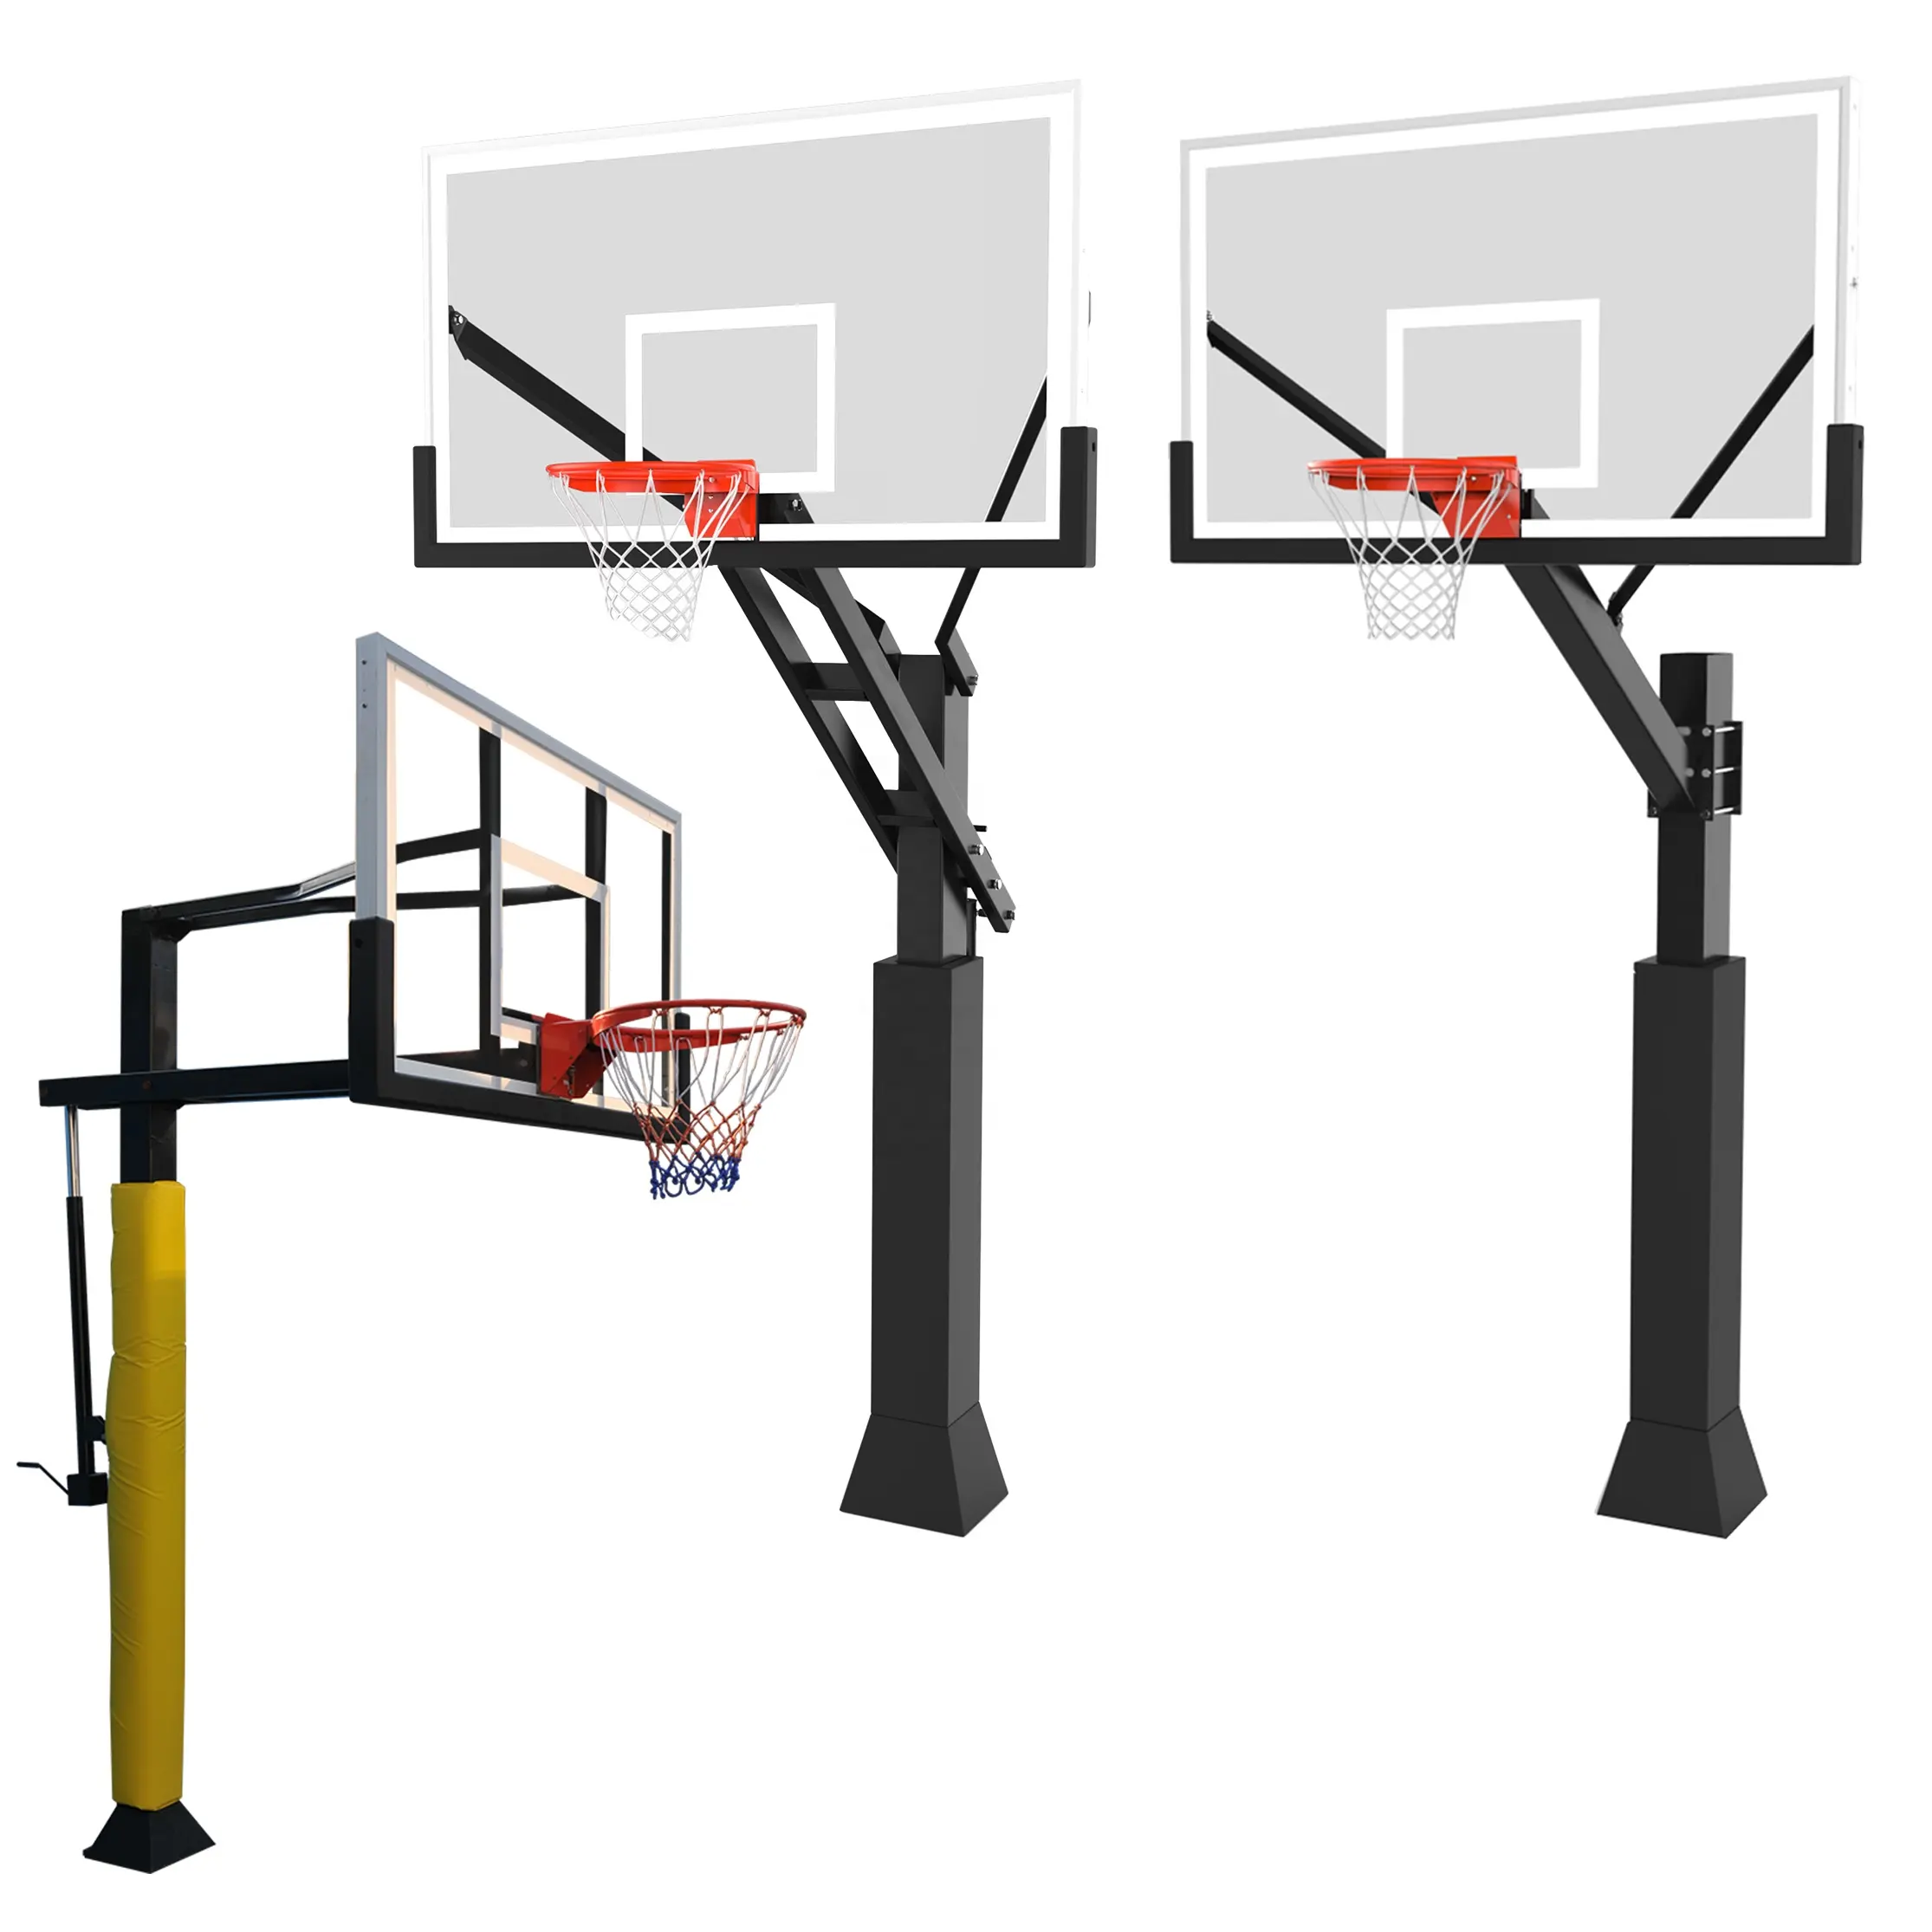 Soporte de aro de baloncesto fijo, altura ajustable, para portería de baloncesto al aire libre